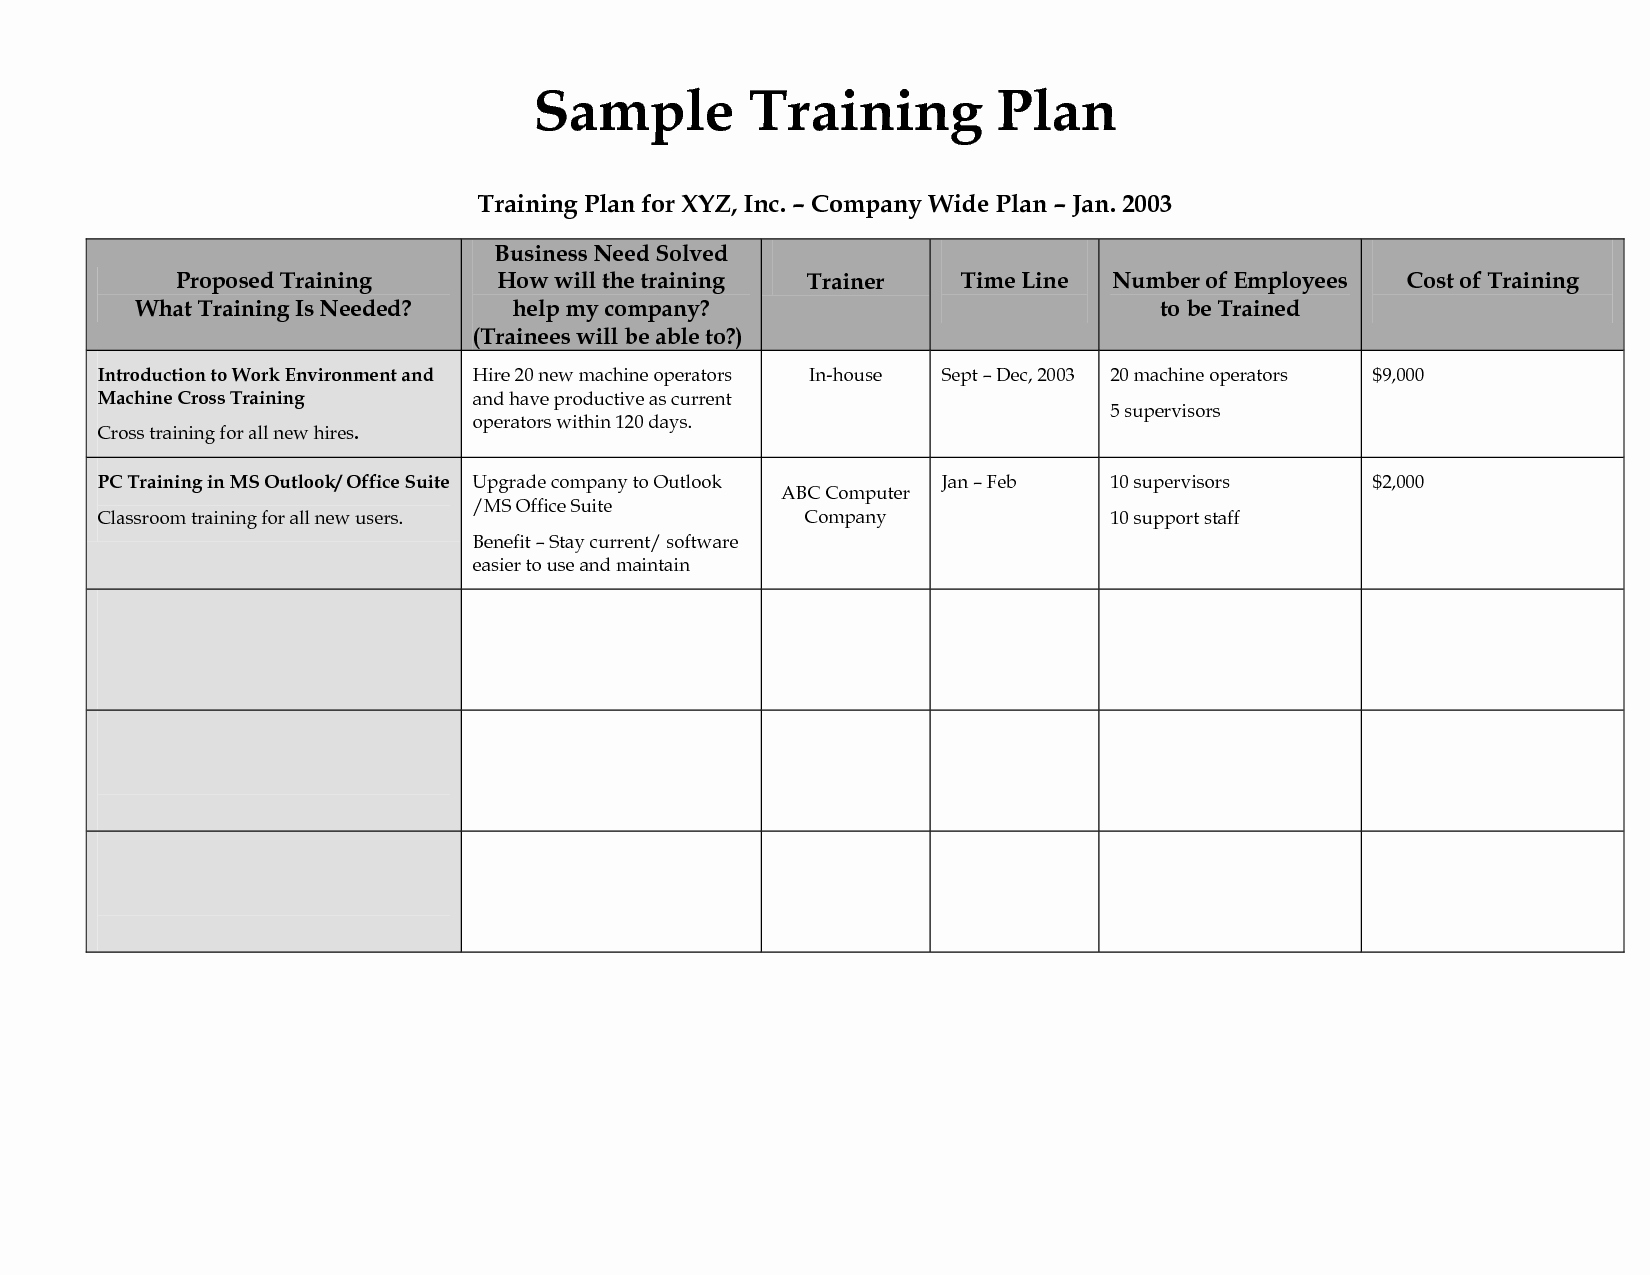 Sample Training Plan Template Inspirational Best S Of Sample Program Design Plan Sample